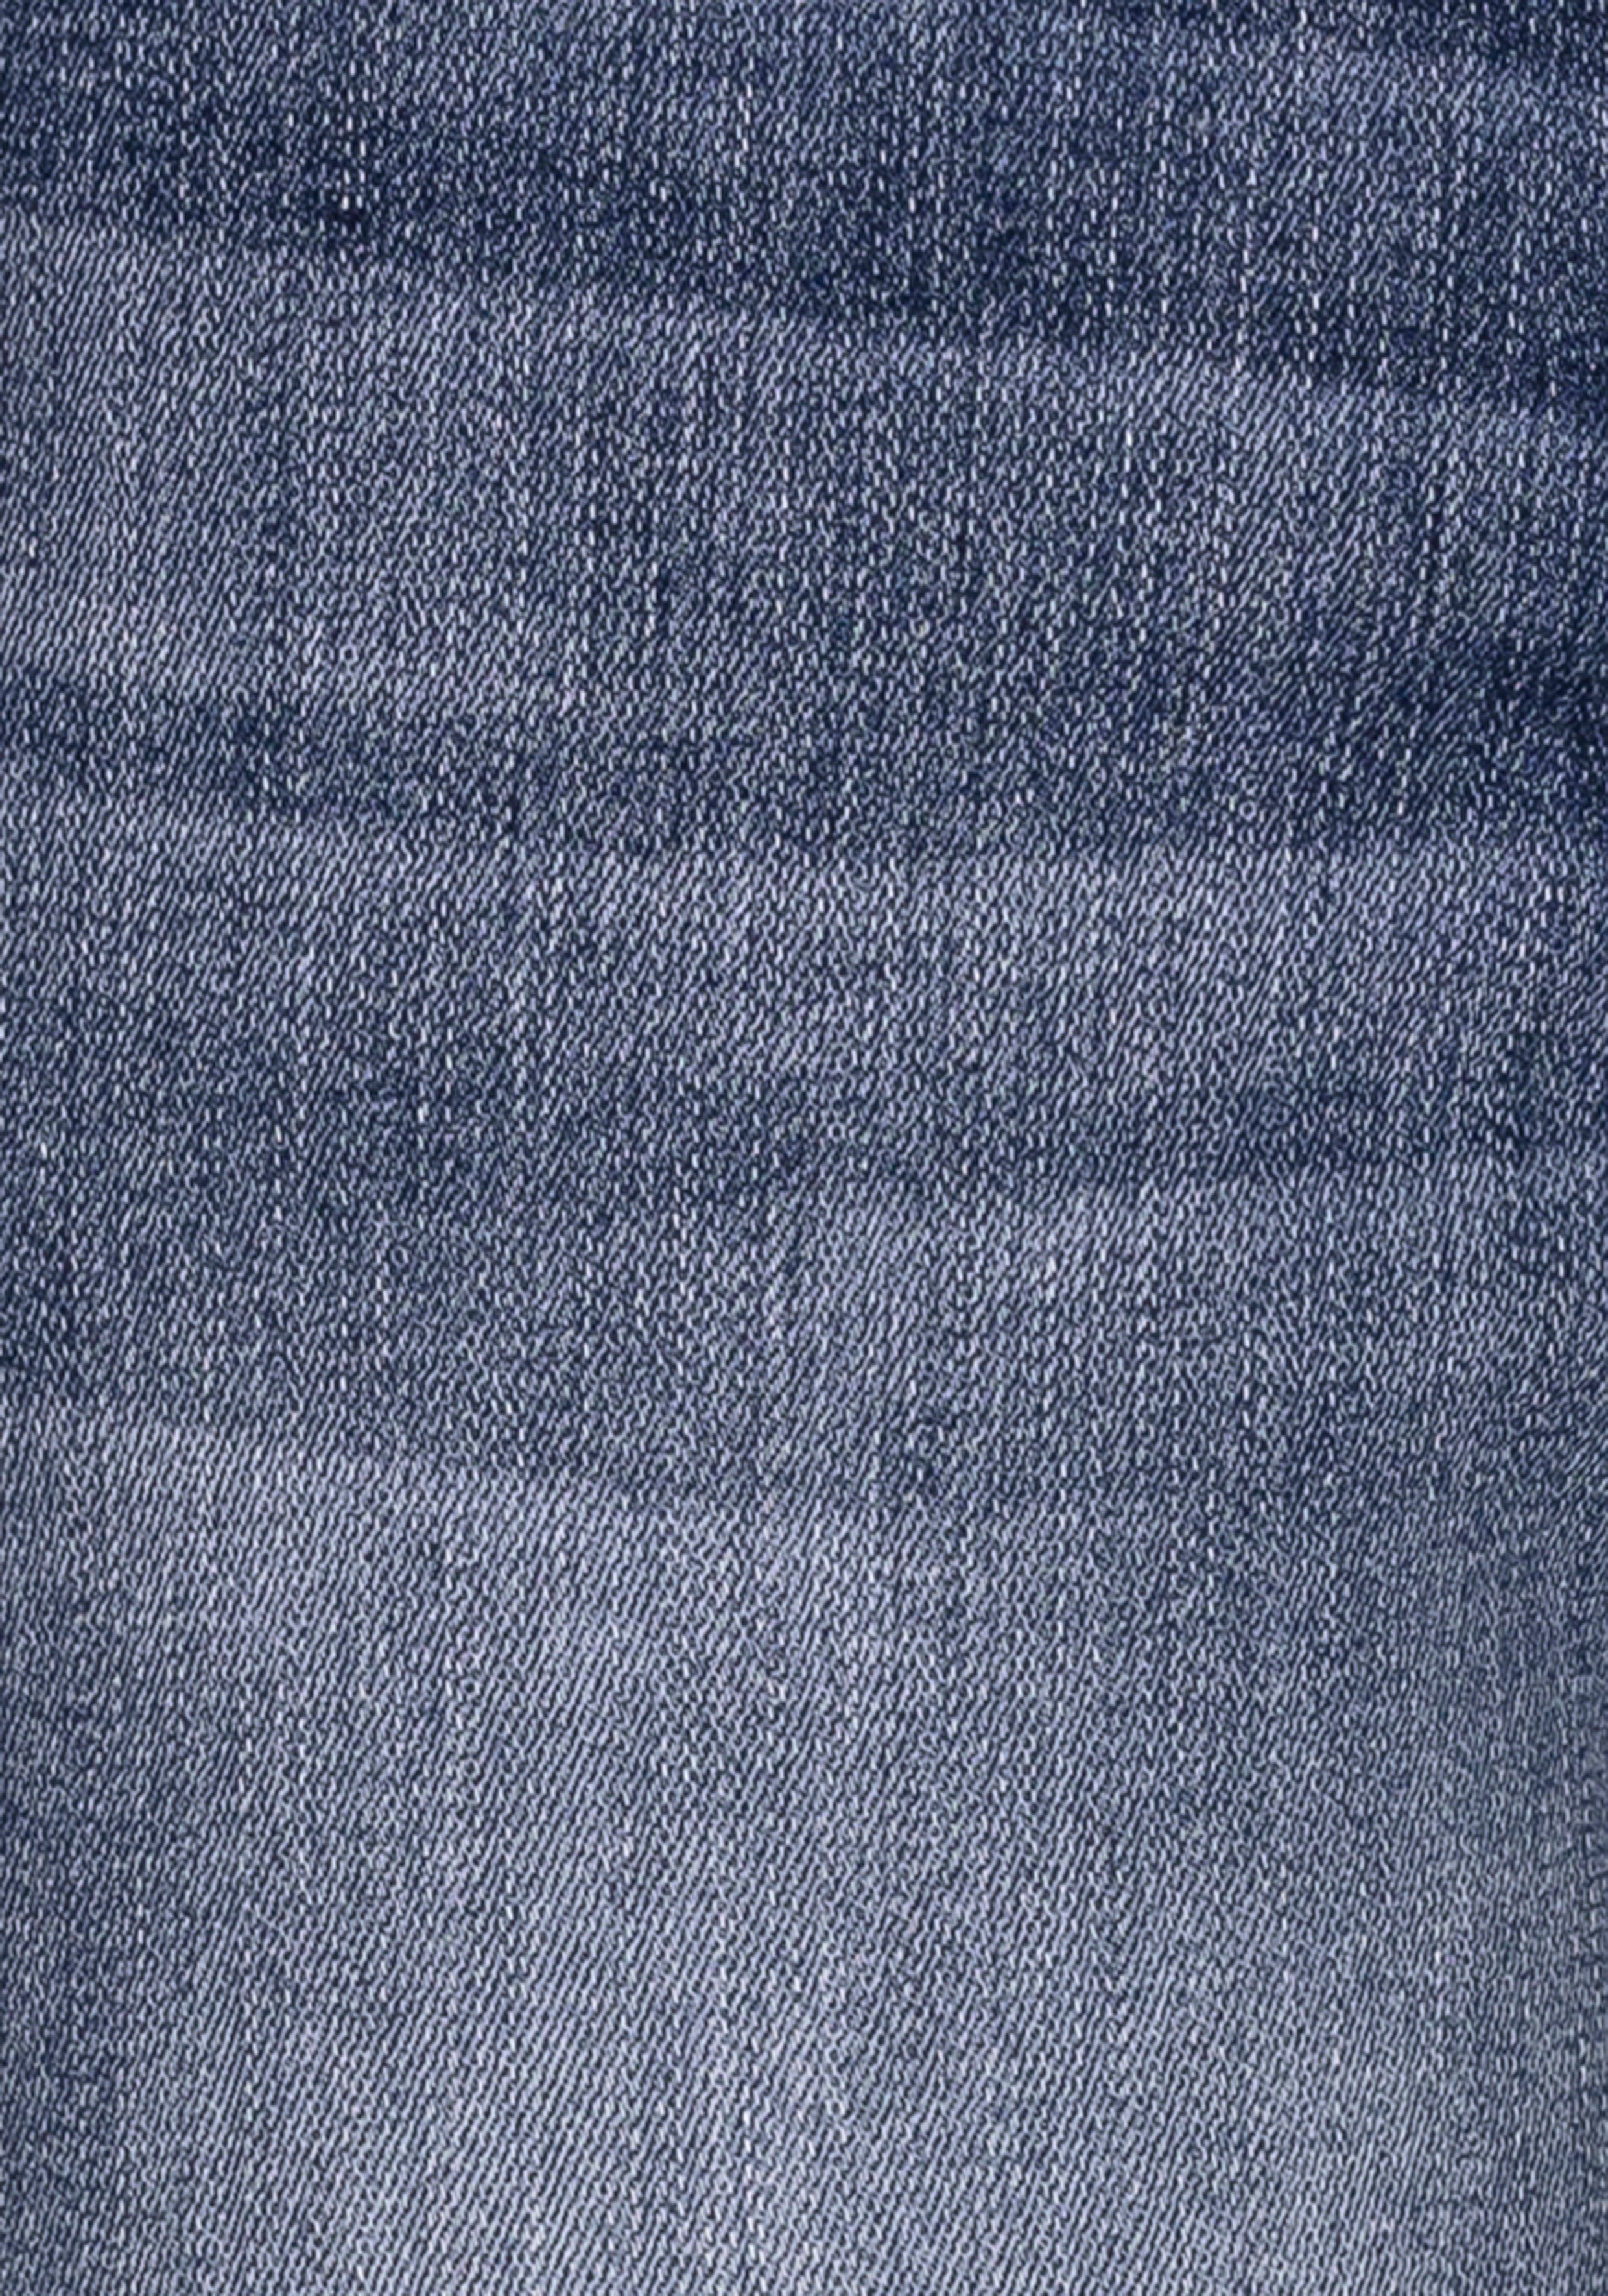 H.I.S 5-pocket jeans AriaMS ecologische waterbesparende productie door ozon wash